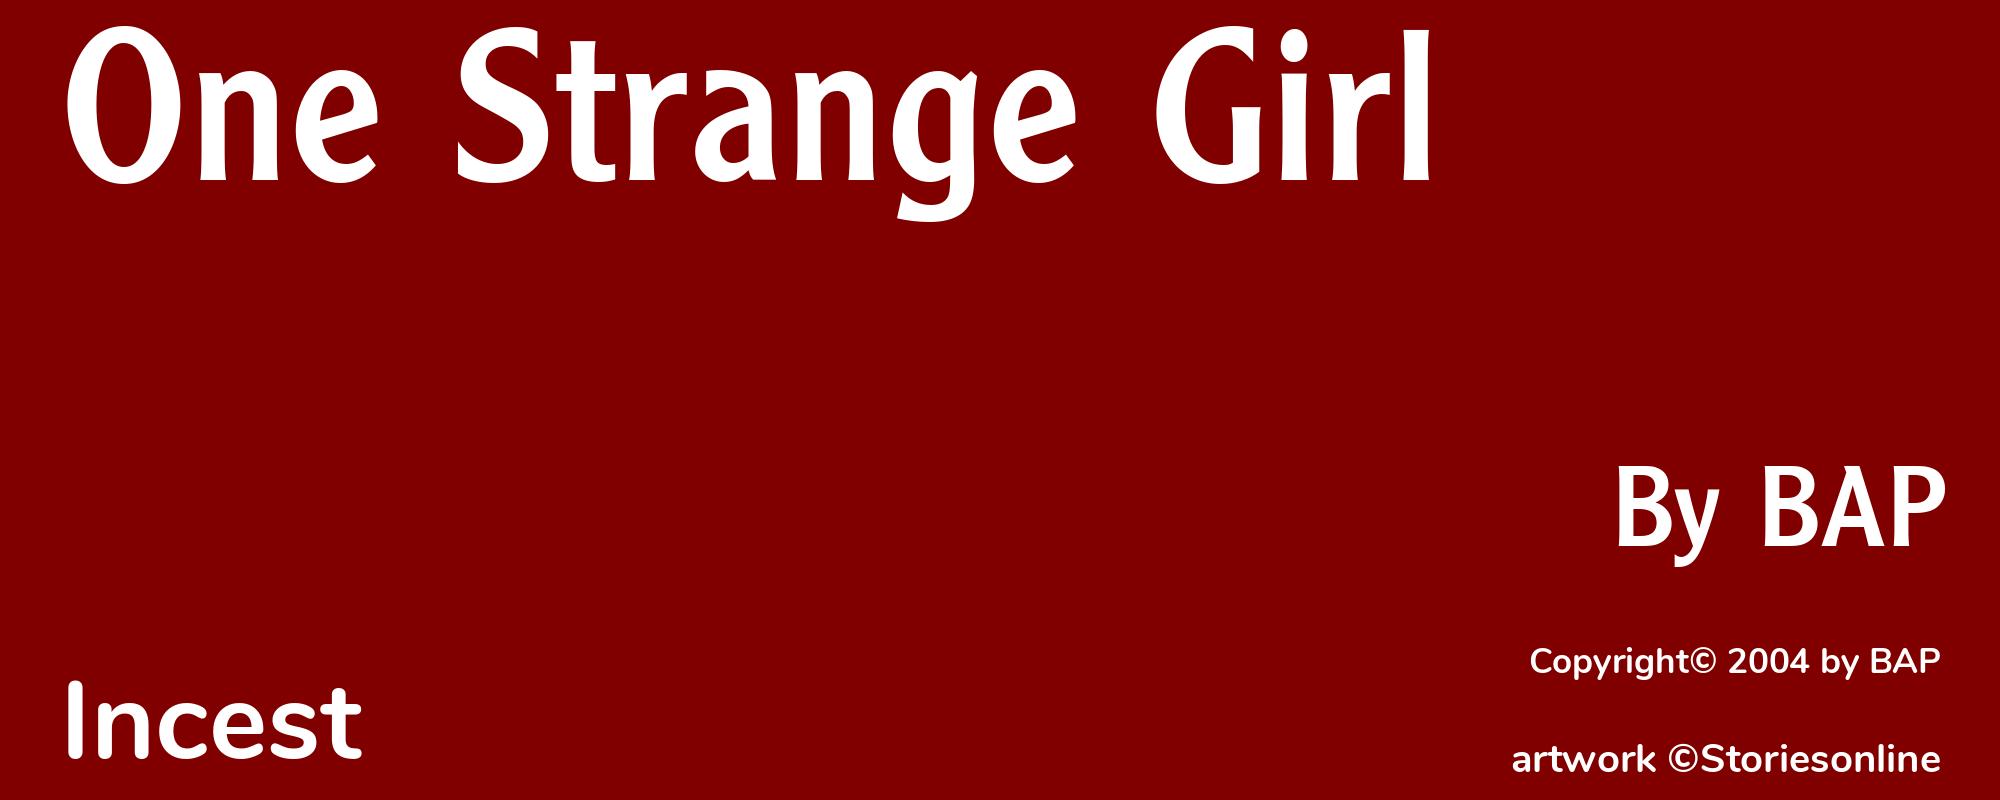 One Strange Girl - Cover